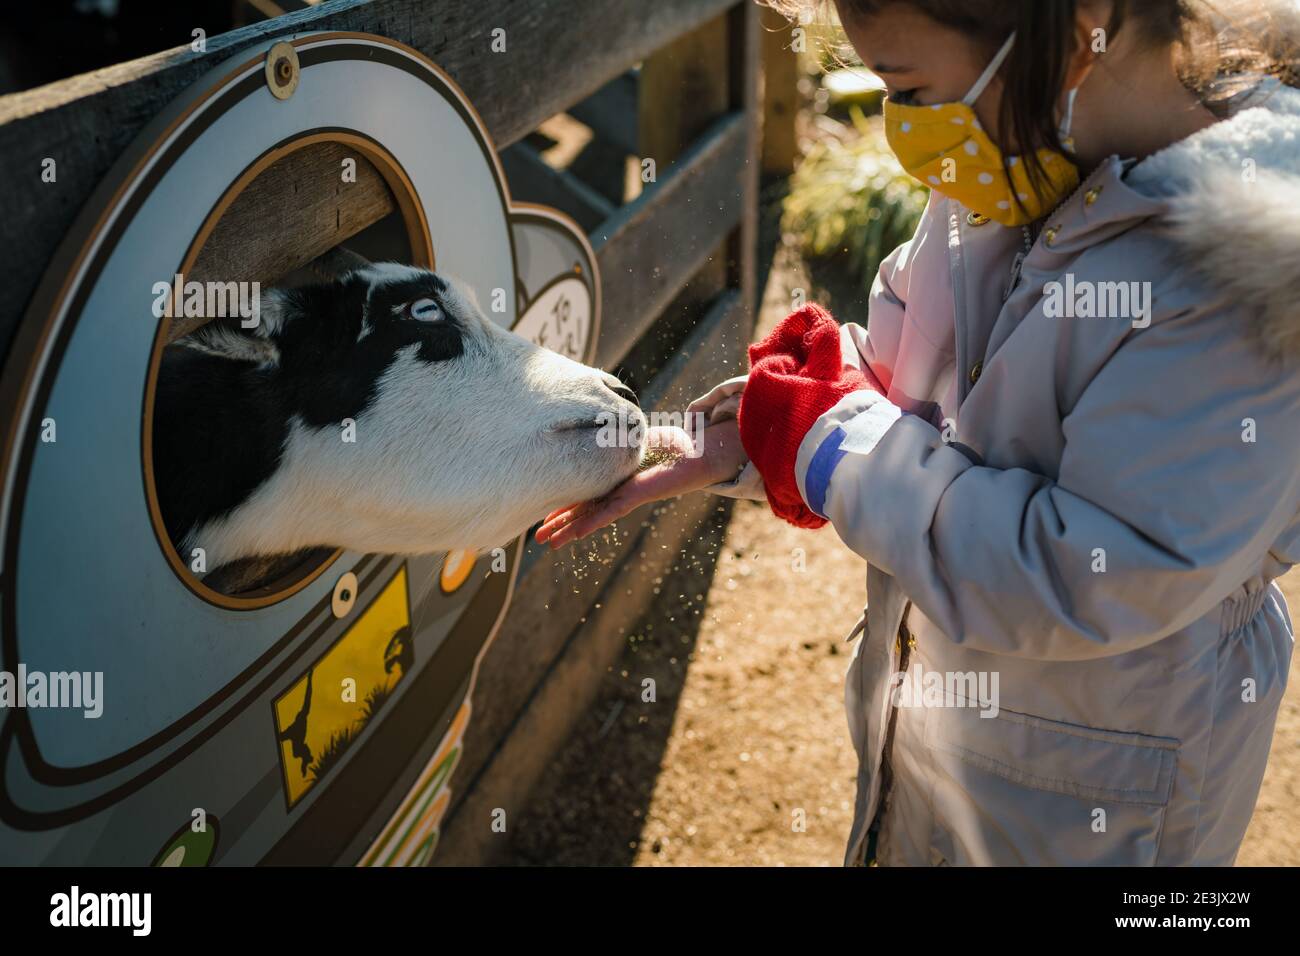 Giovane ragazza con maschera facciale che alimenta animali da fattoria vacca bambino Foto Stock